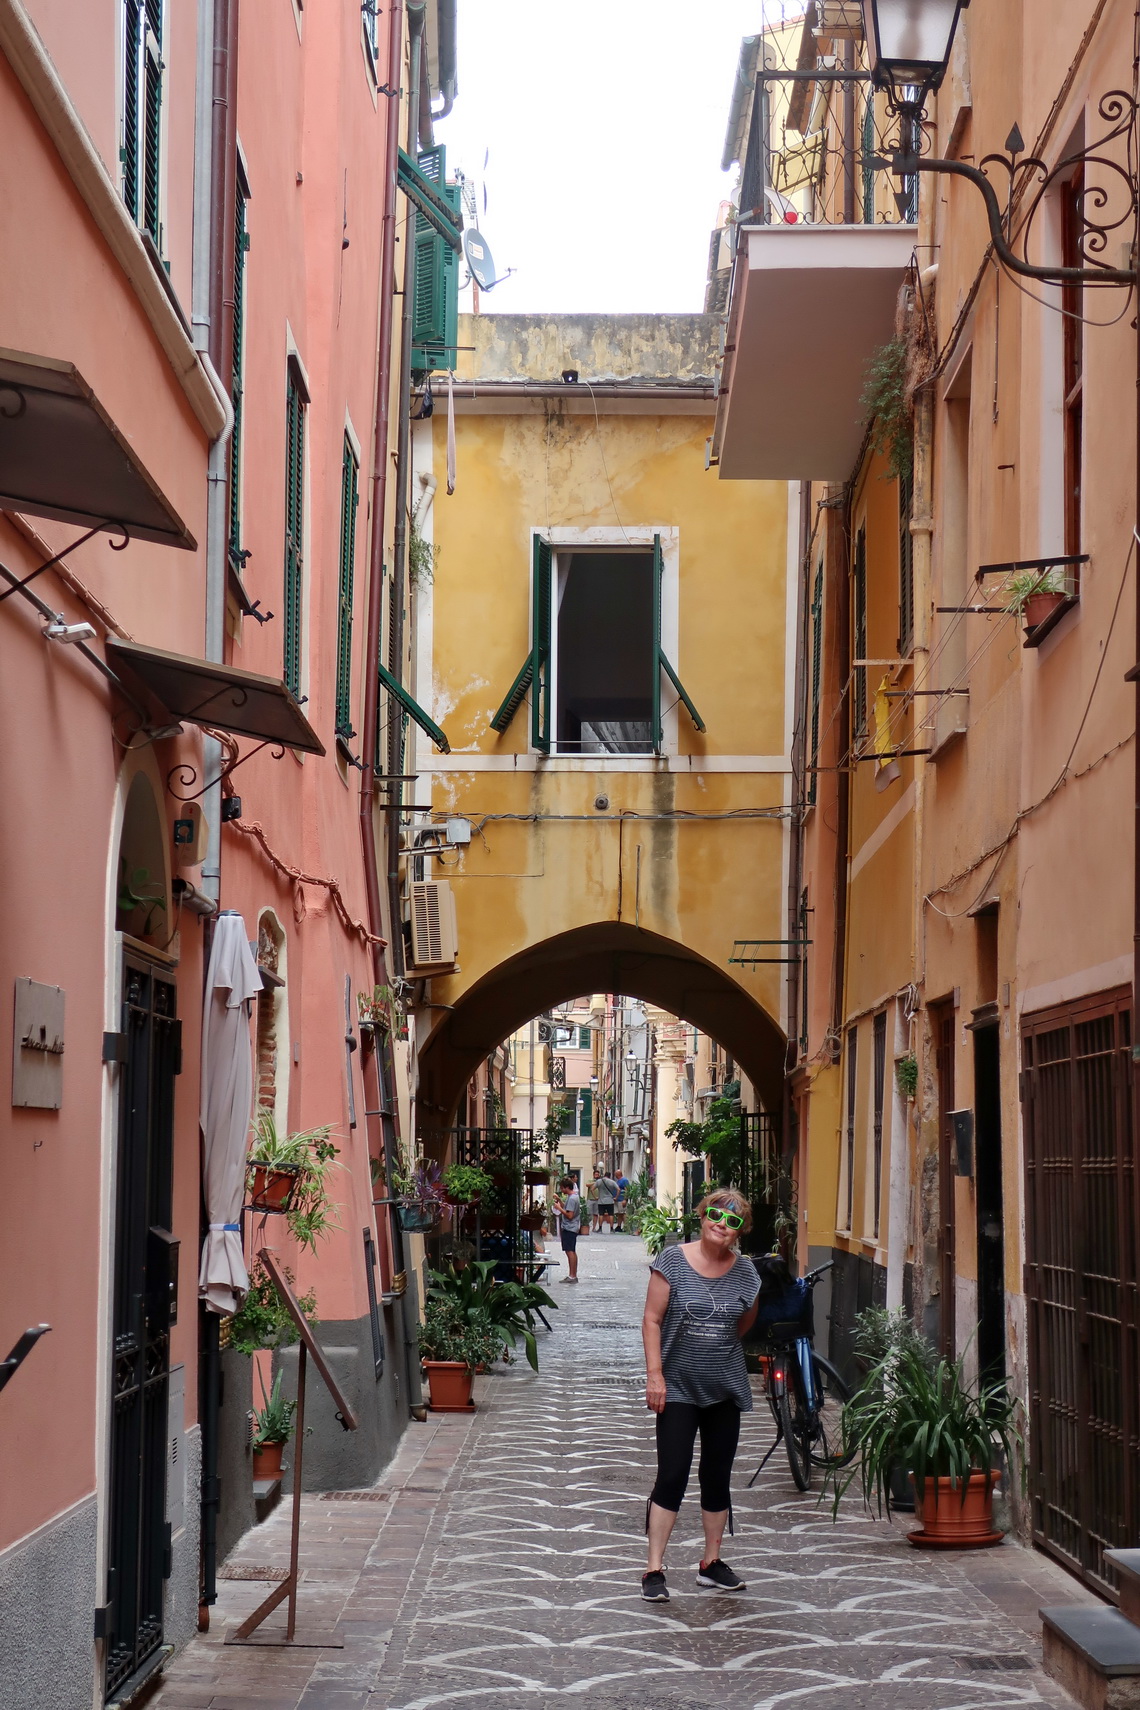 Narrow alley in Pietra Ligure